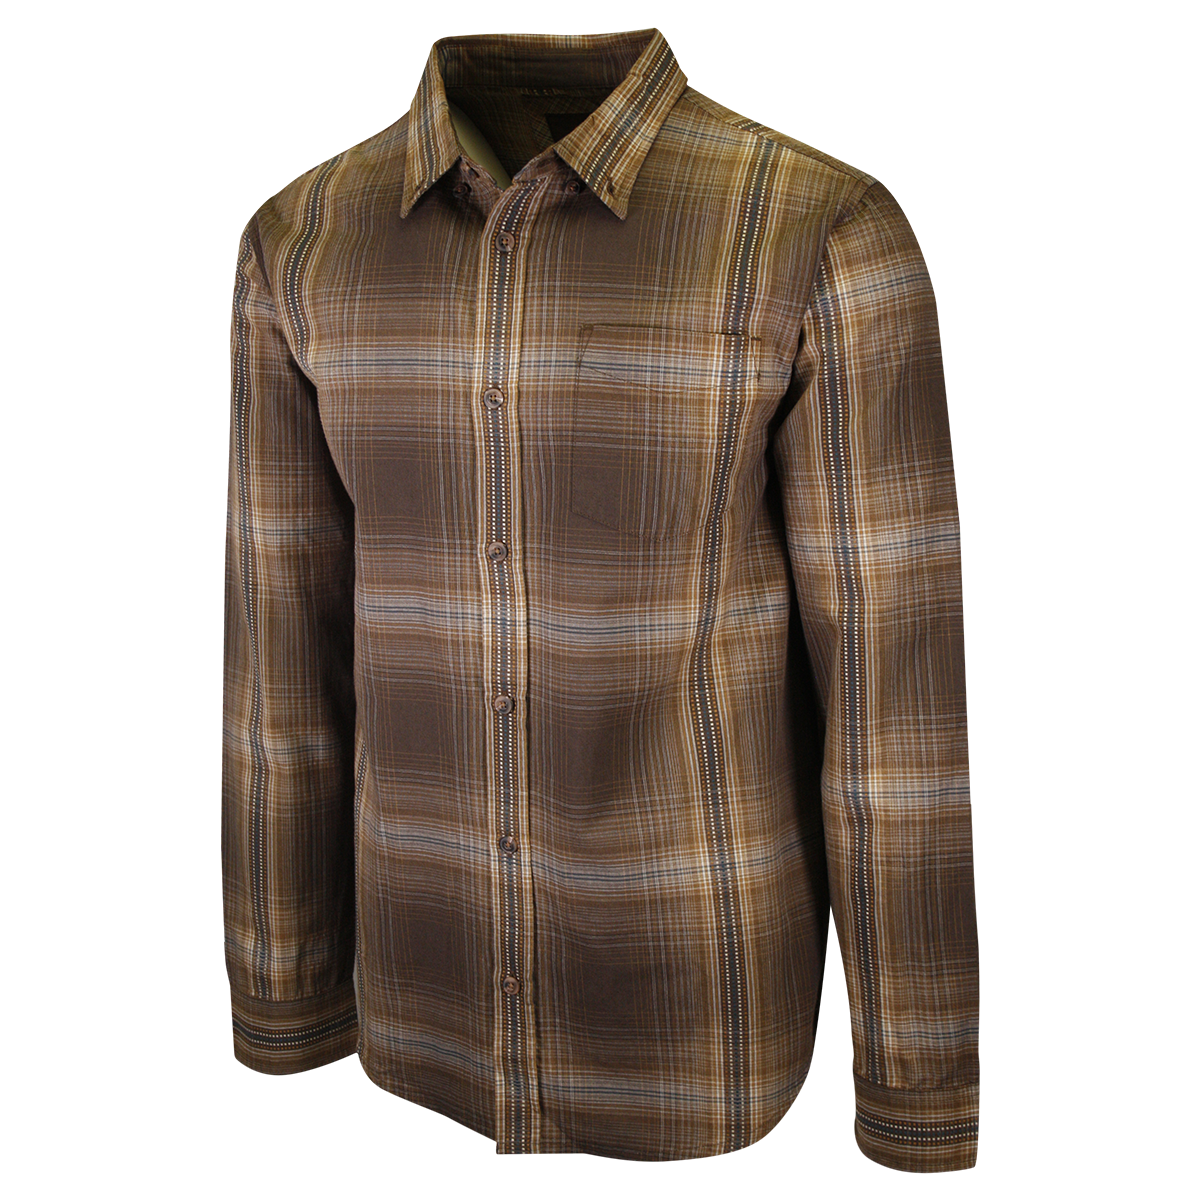 prAna Men's Brown Orange Blue Plaid L/S Woven Shirt (S63)